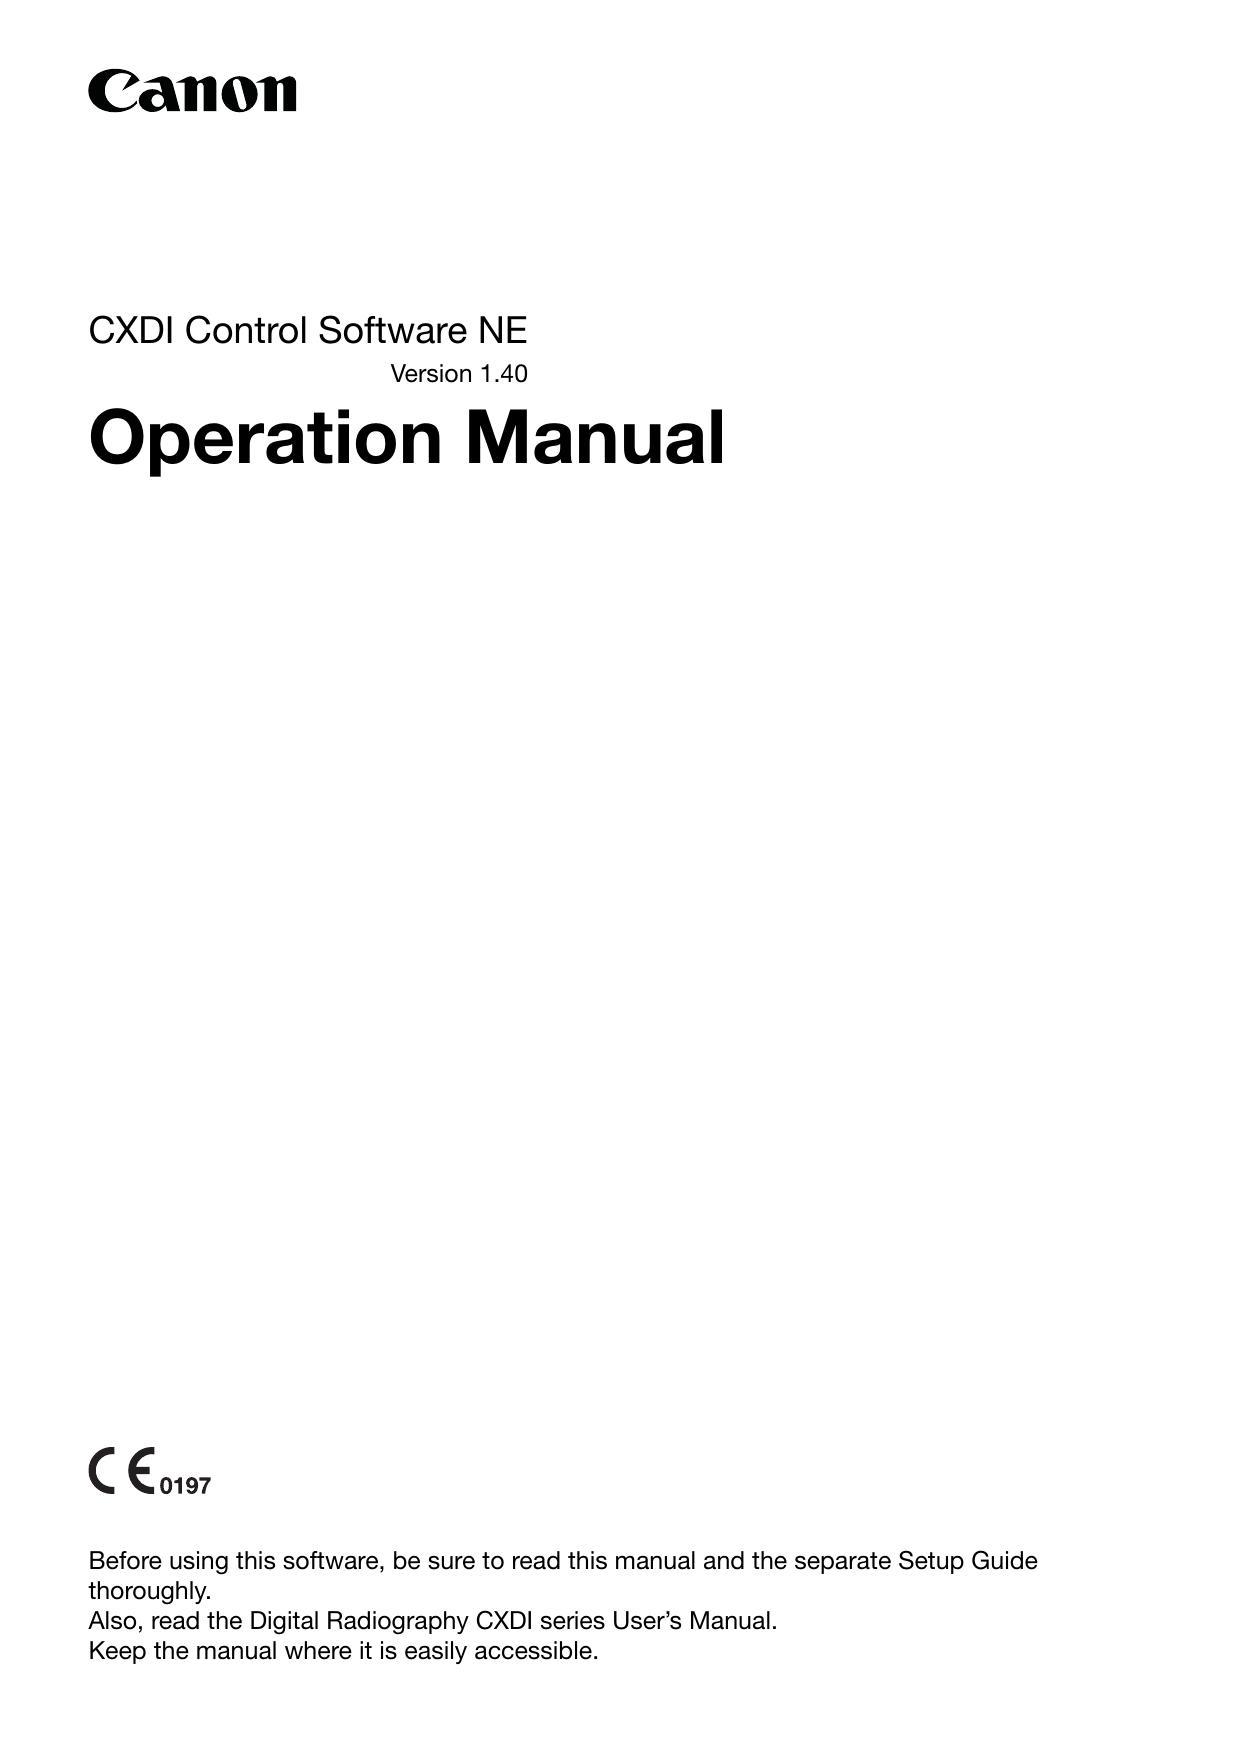 canon-cxdi-control-software-ne-version-140-operation-manual.pdf